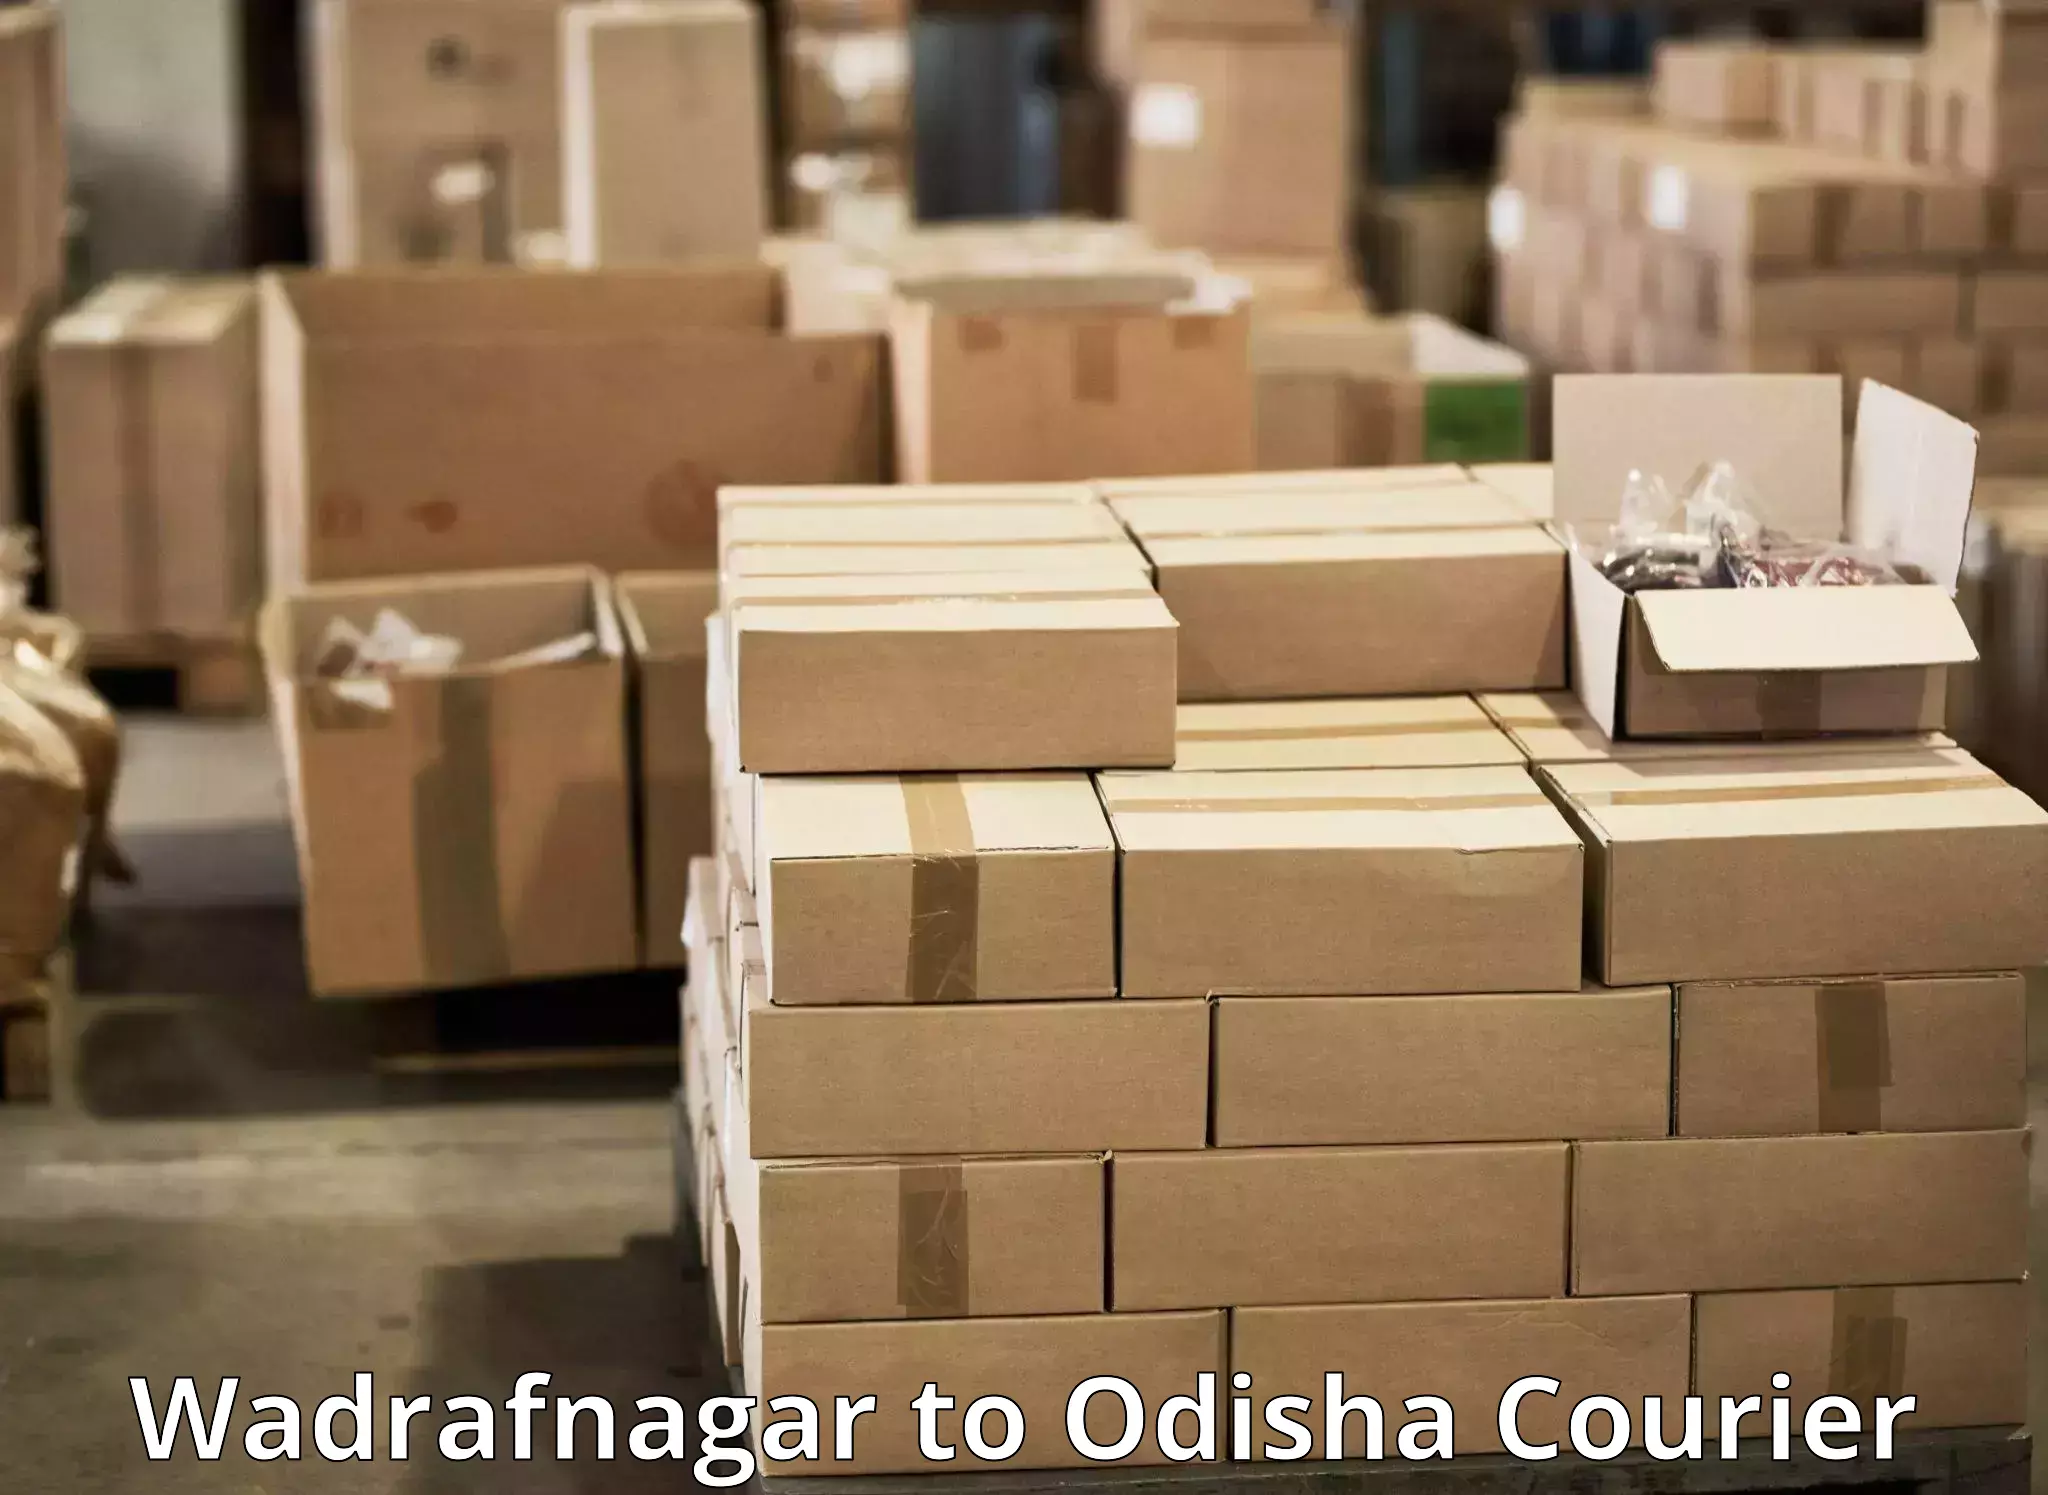 Fast shipping solutions Wadrafnagar to Joda